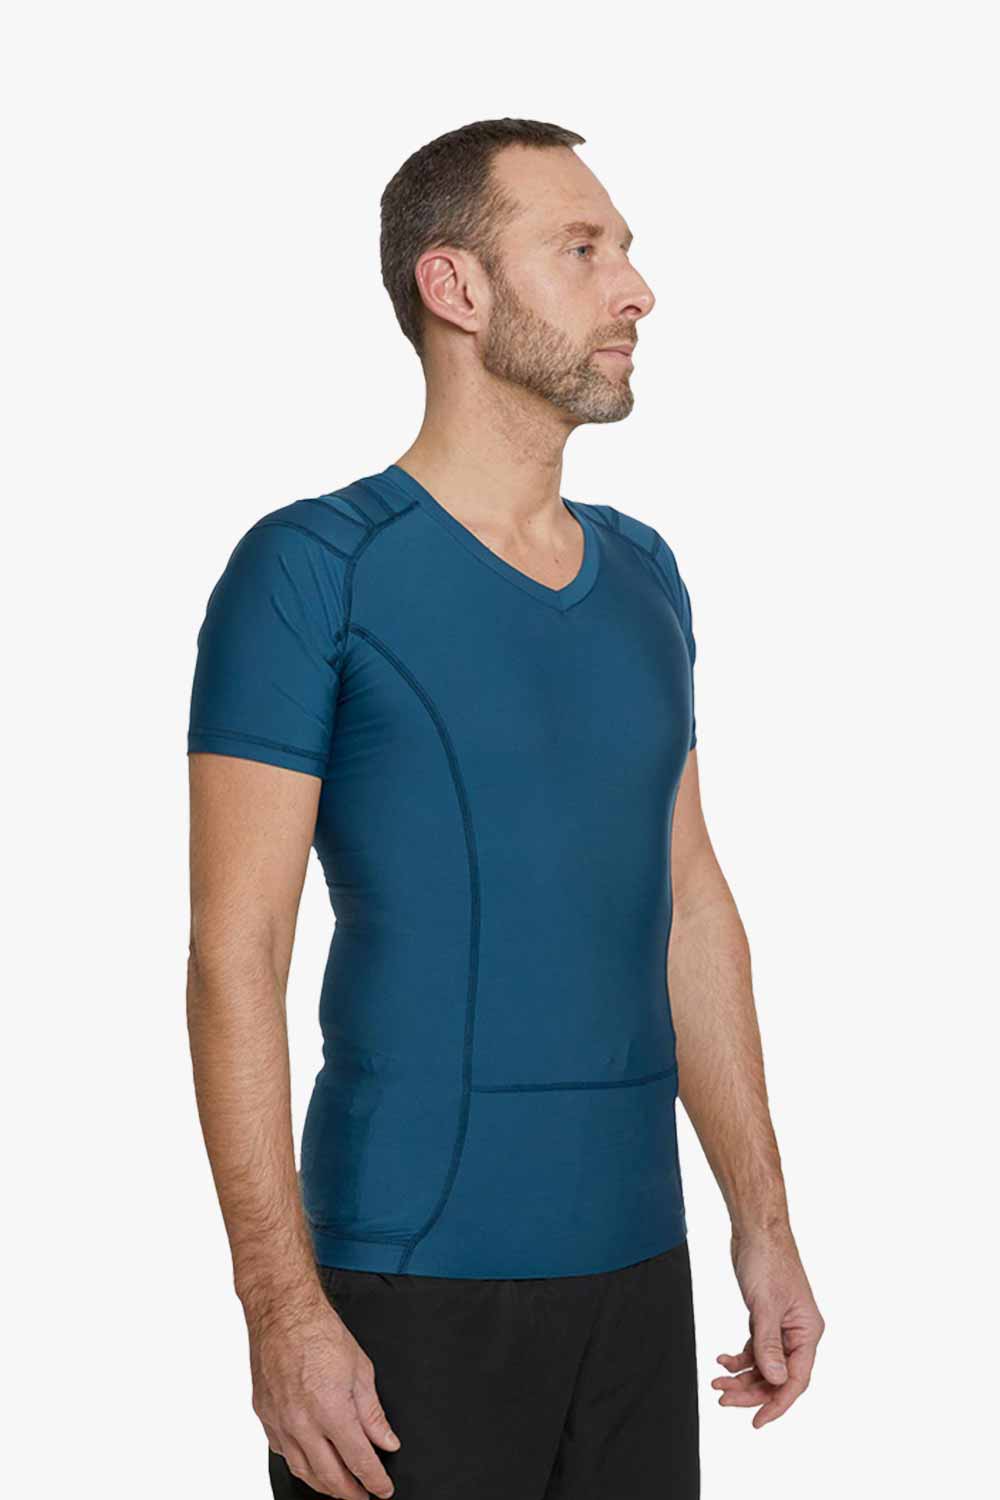 DEMO | Men's Posture Shirt™ - Petrol